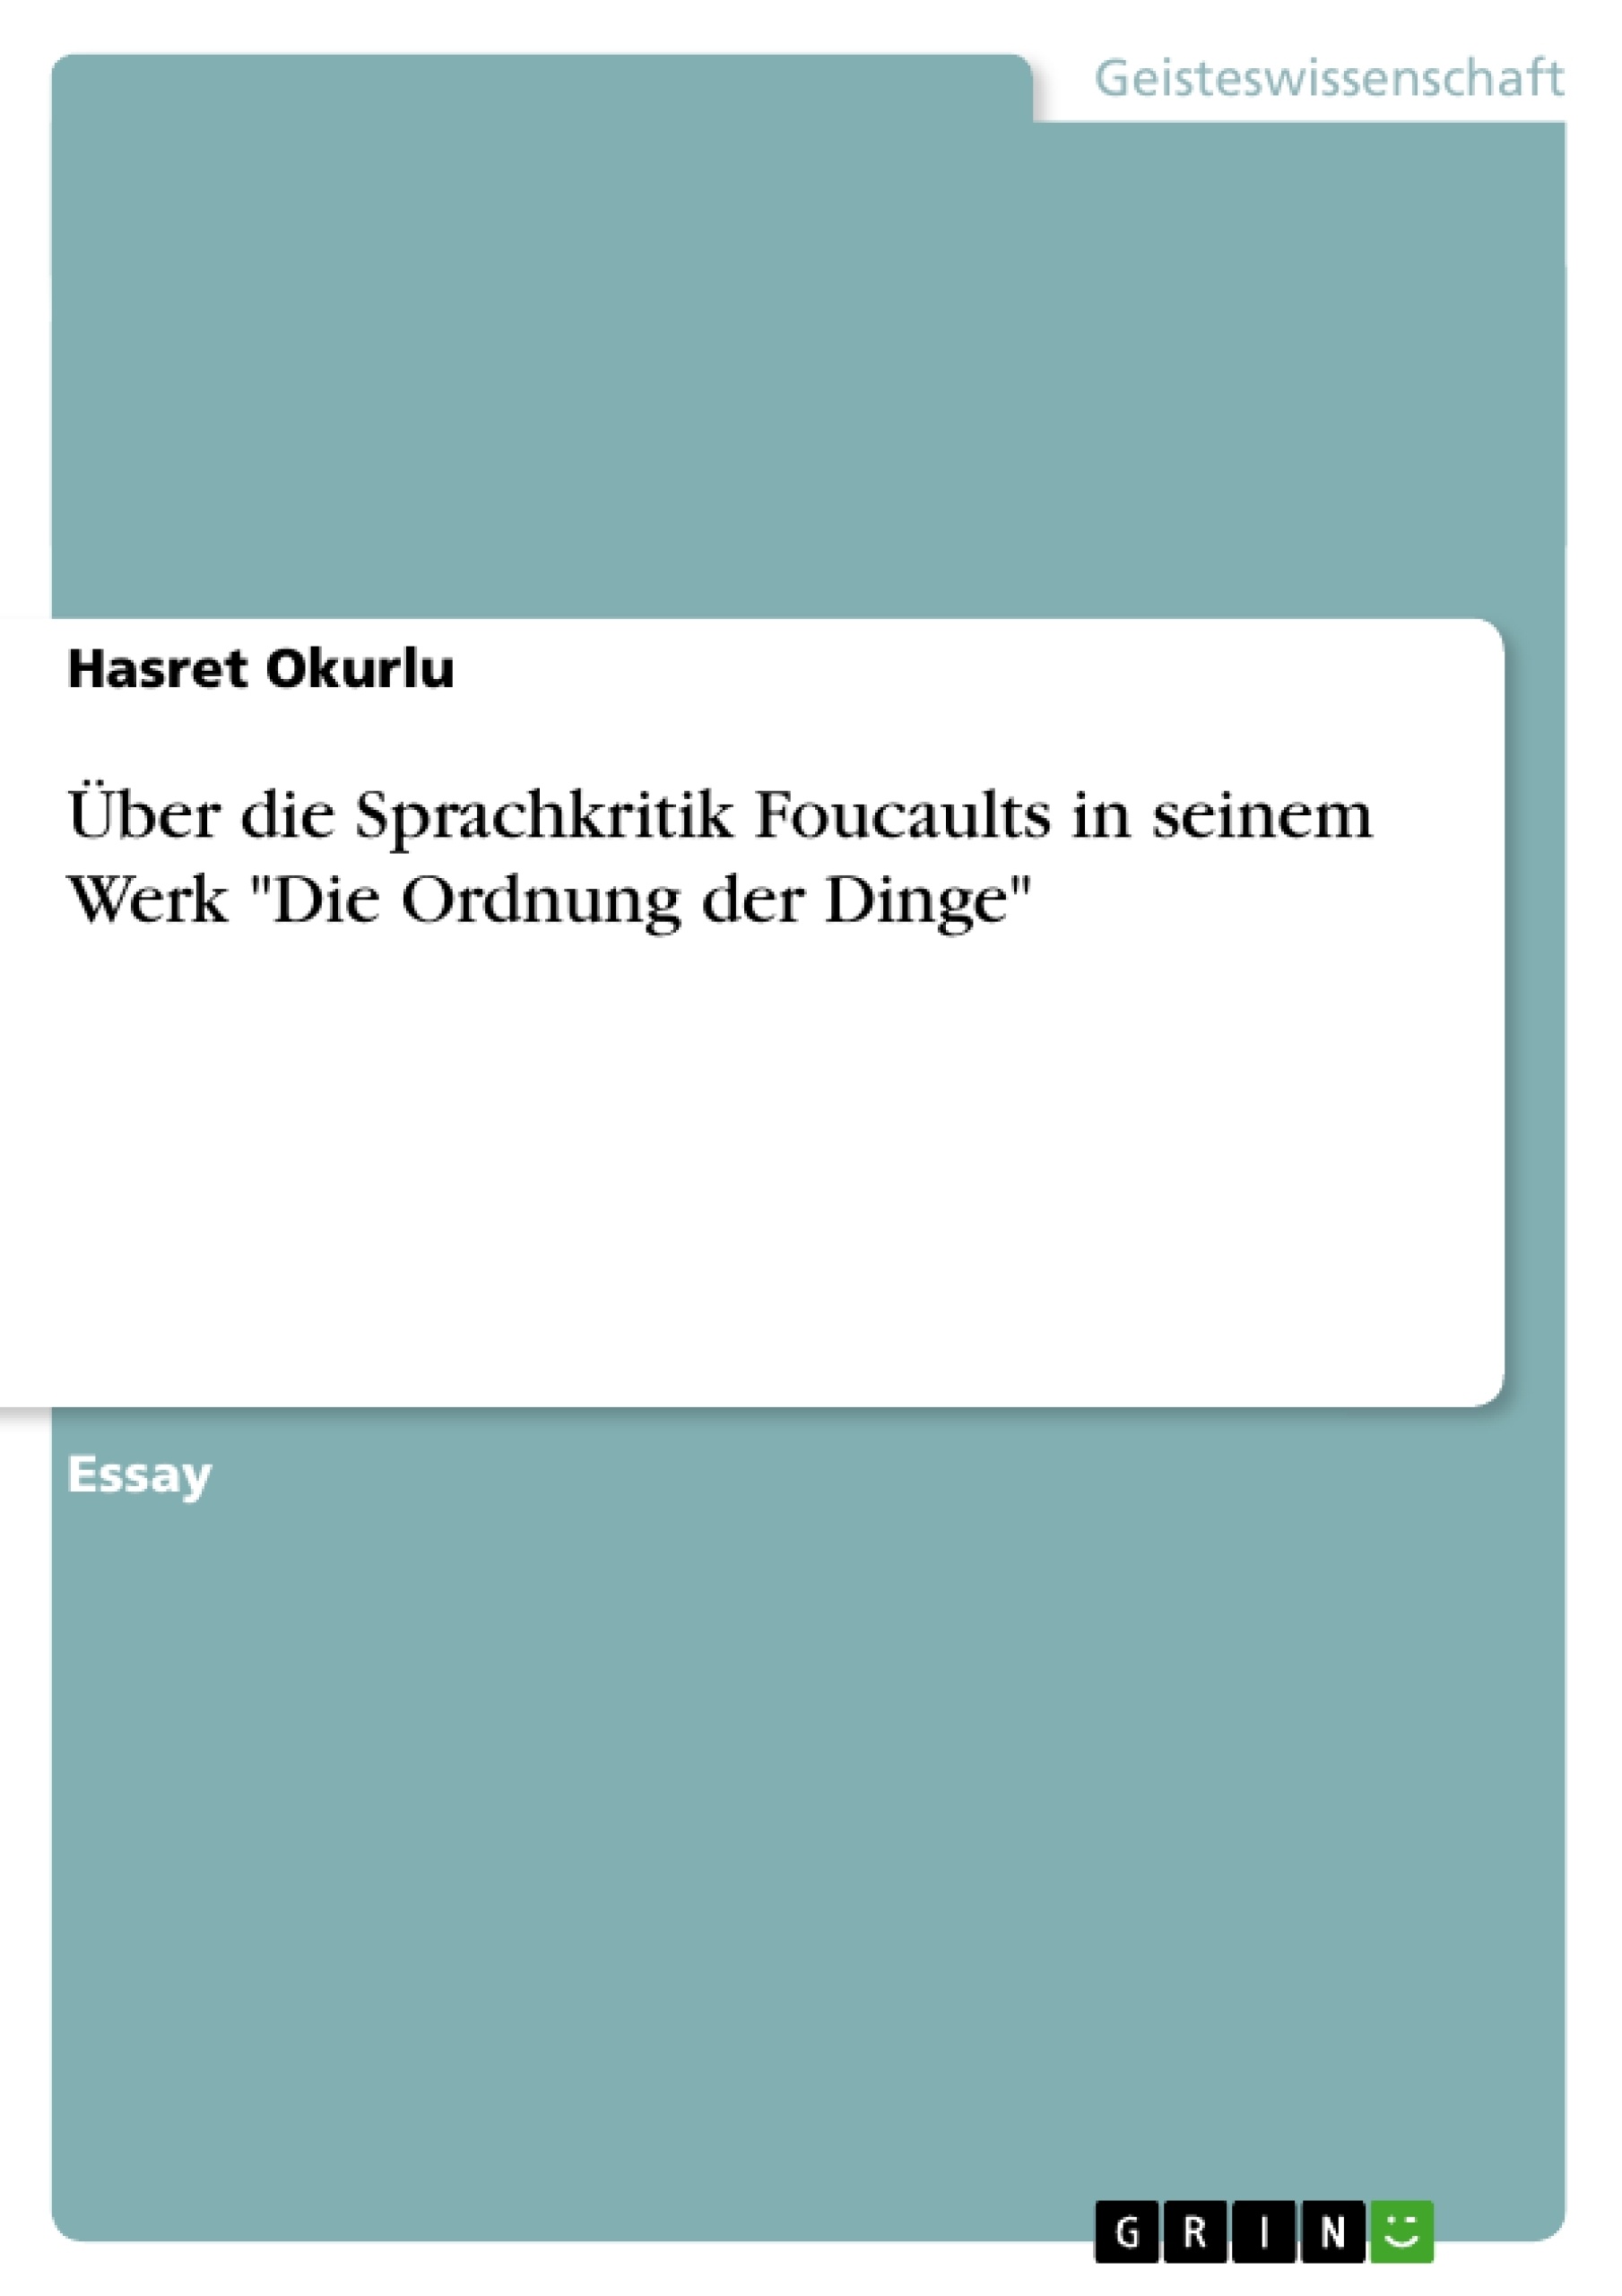 Title: Über die Sprachkritik Foucaults in seinem Werk "Die Ordnung der Dinge"